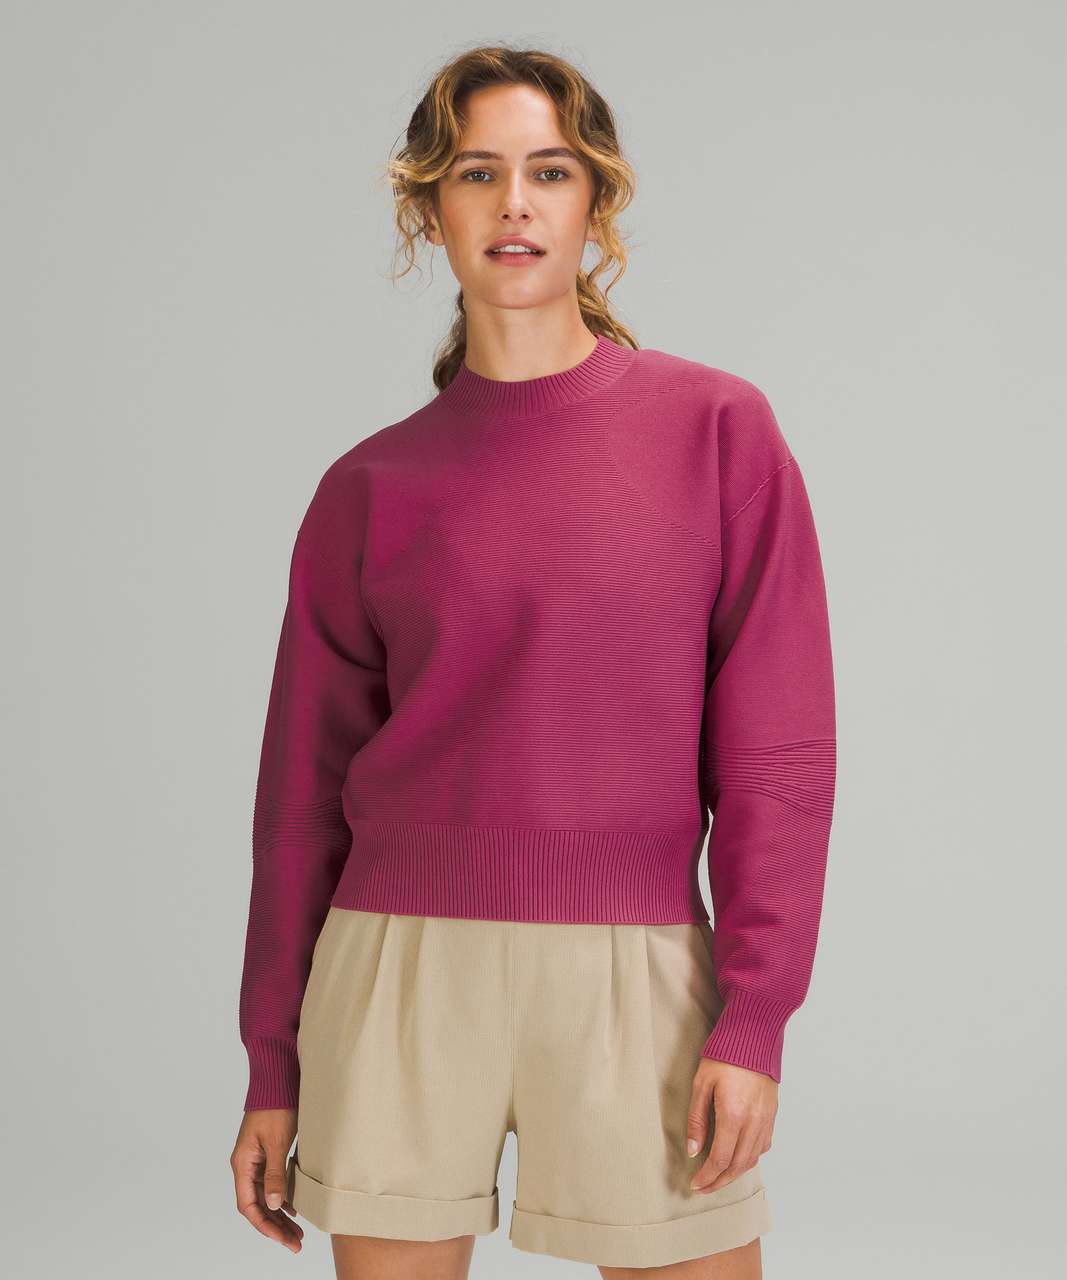 Size 10 Lululemon Pink Women's Sweater & Sweatshirt